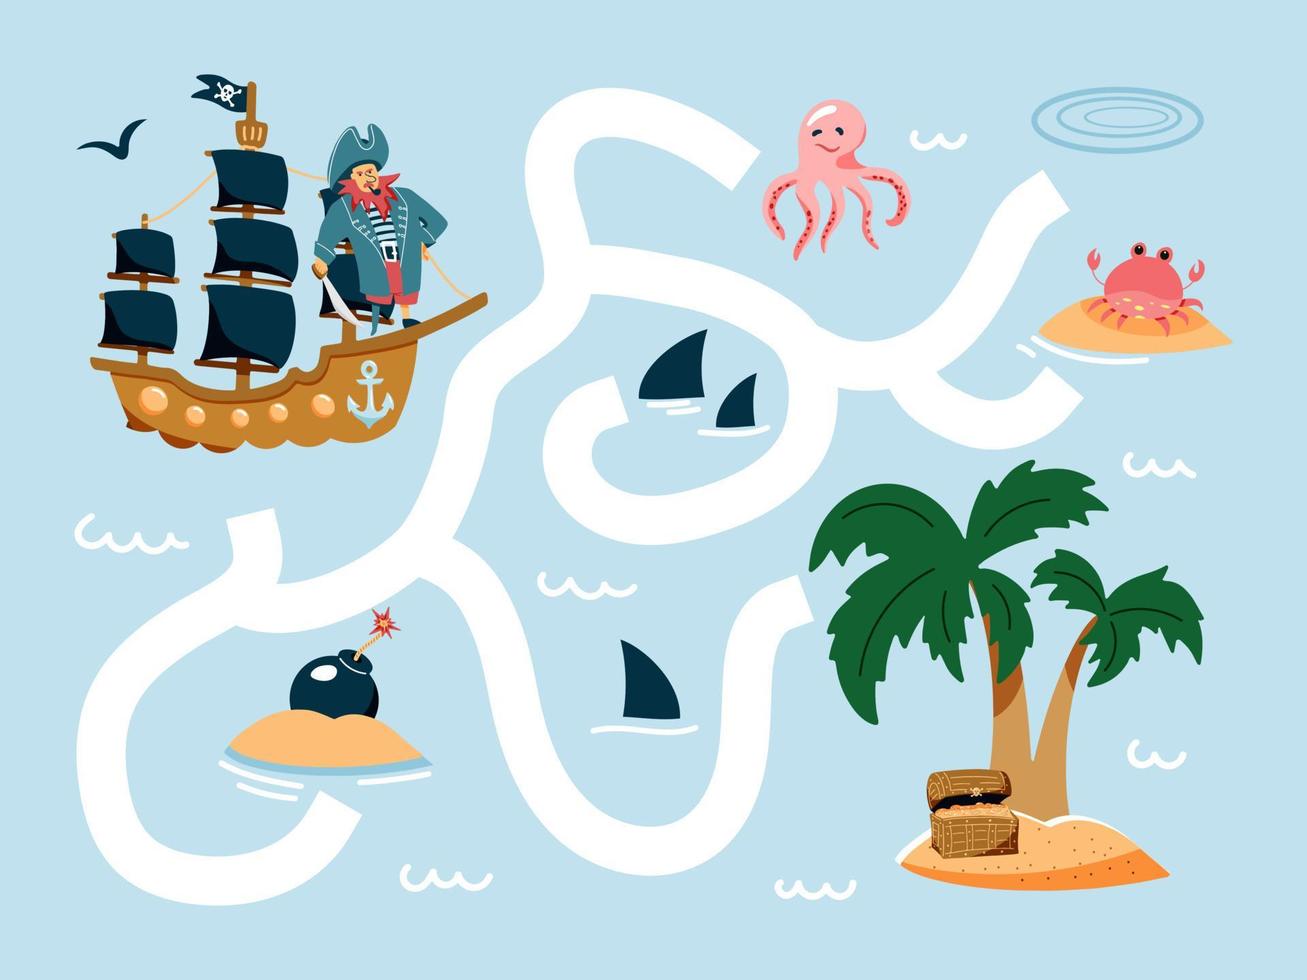 ayuda al barco pirata a encontrar el camino a la isla. juego de laberinto pirata de dibujos animados lindo. laberinto. divertido juego para la educación de los niños. ilustración vectorial vector